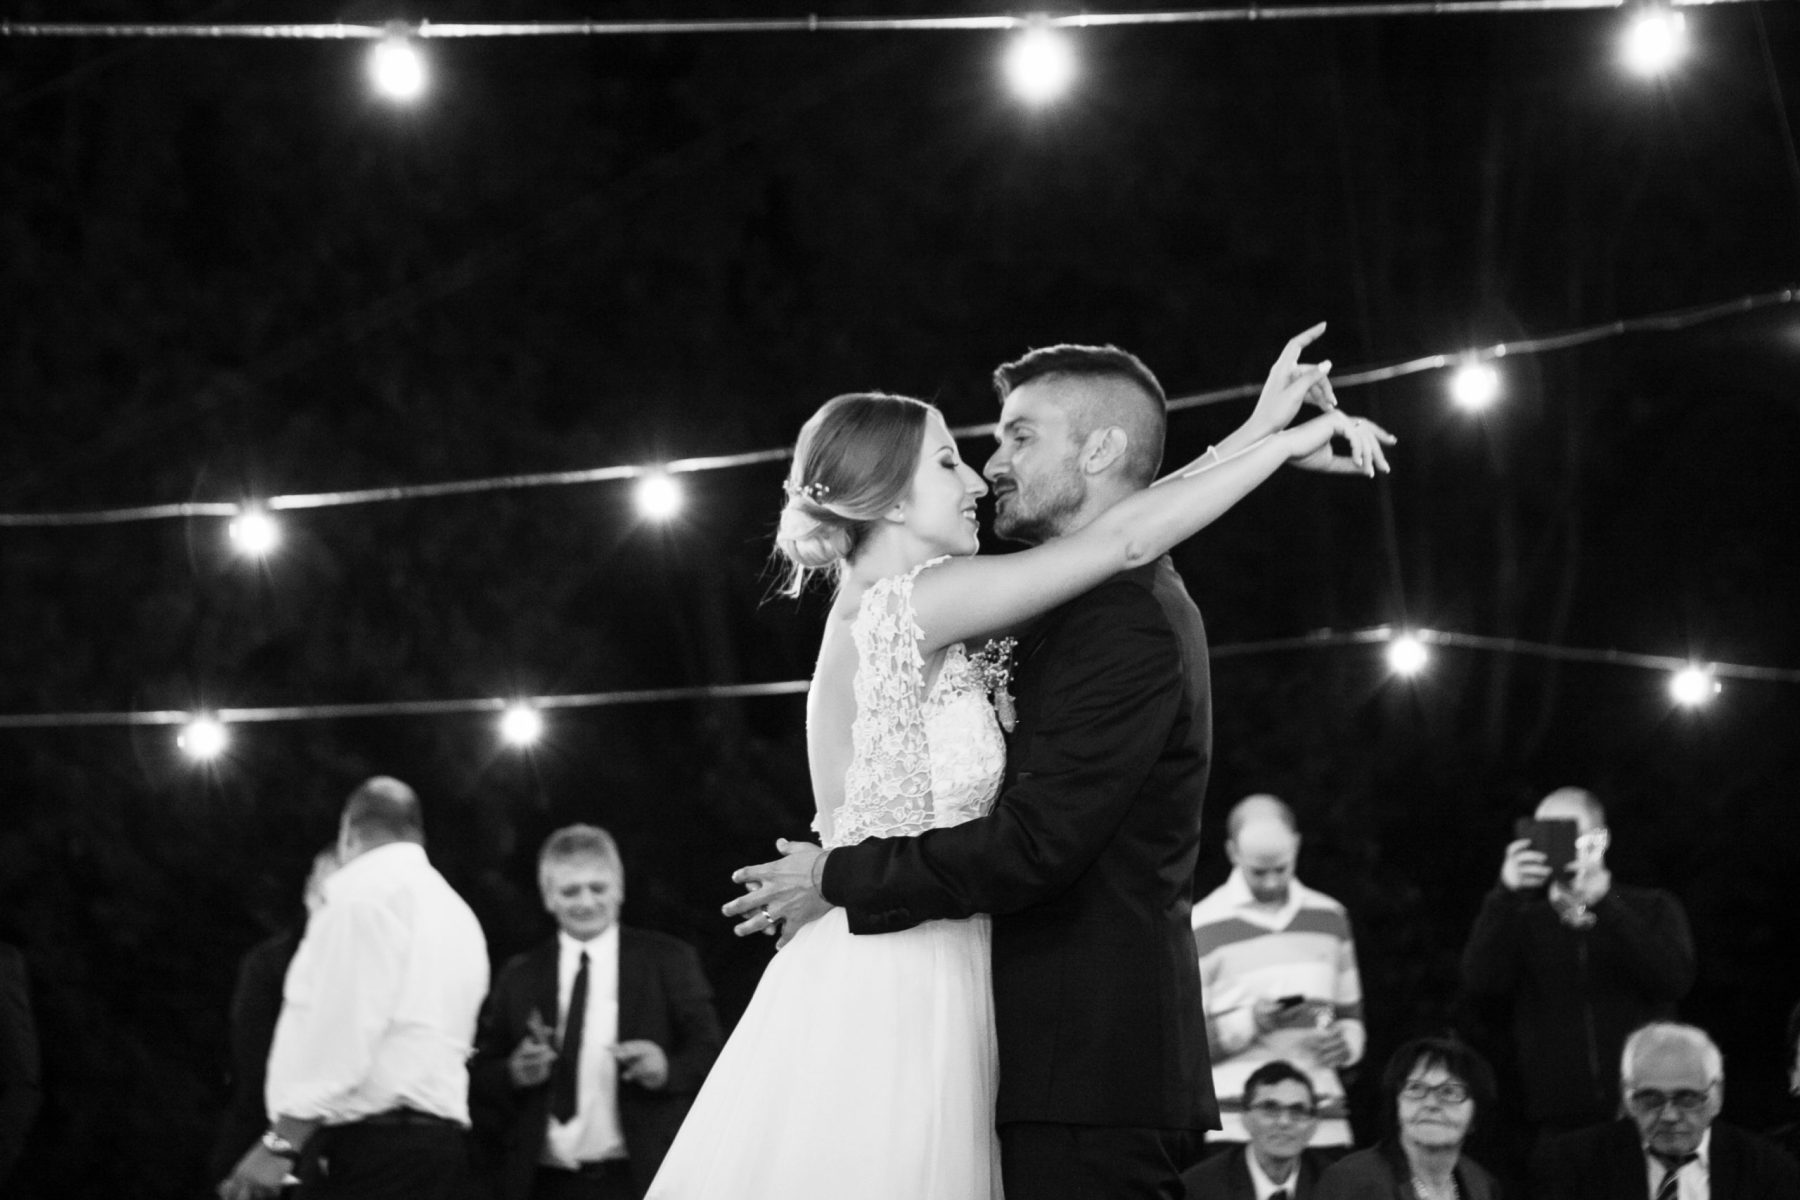 fotografia sposi in bianco e nero fotografia romantica mentre  fanno primo ballo da sposati servizio fotografico matrimonio carpi